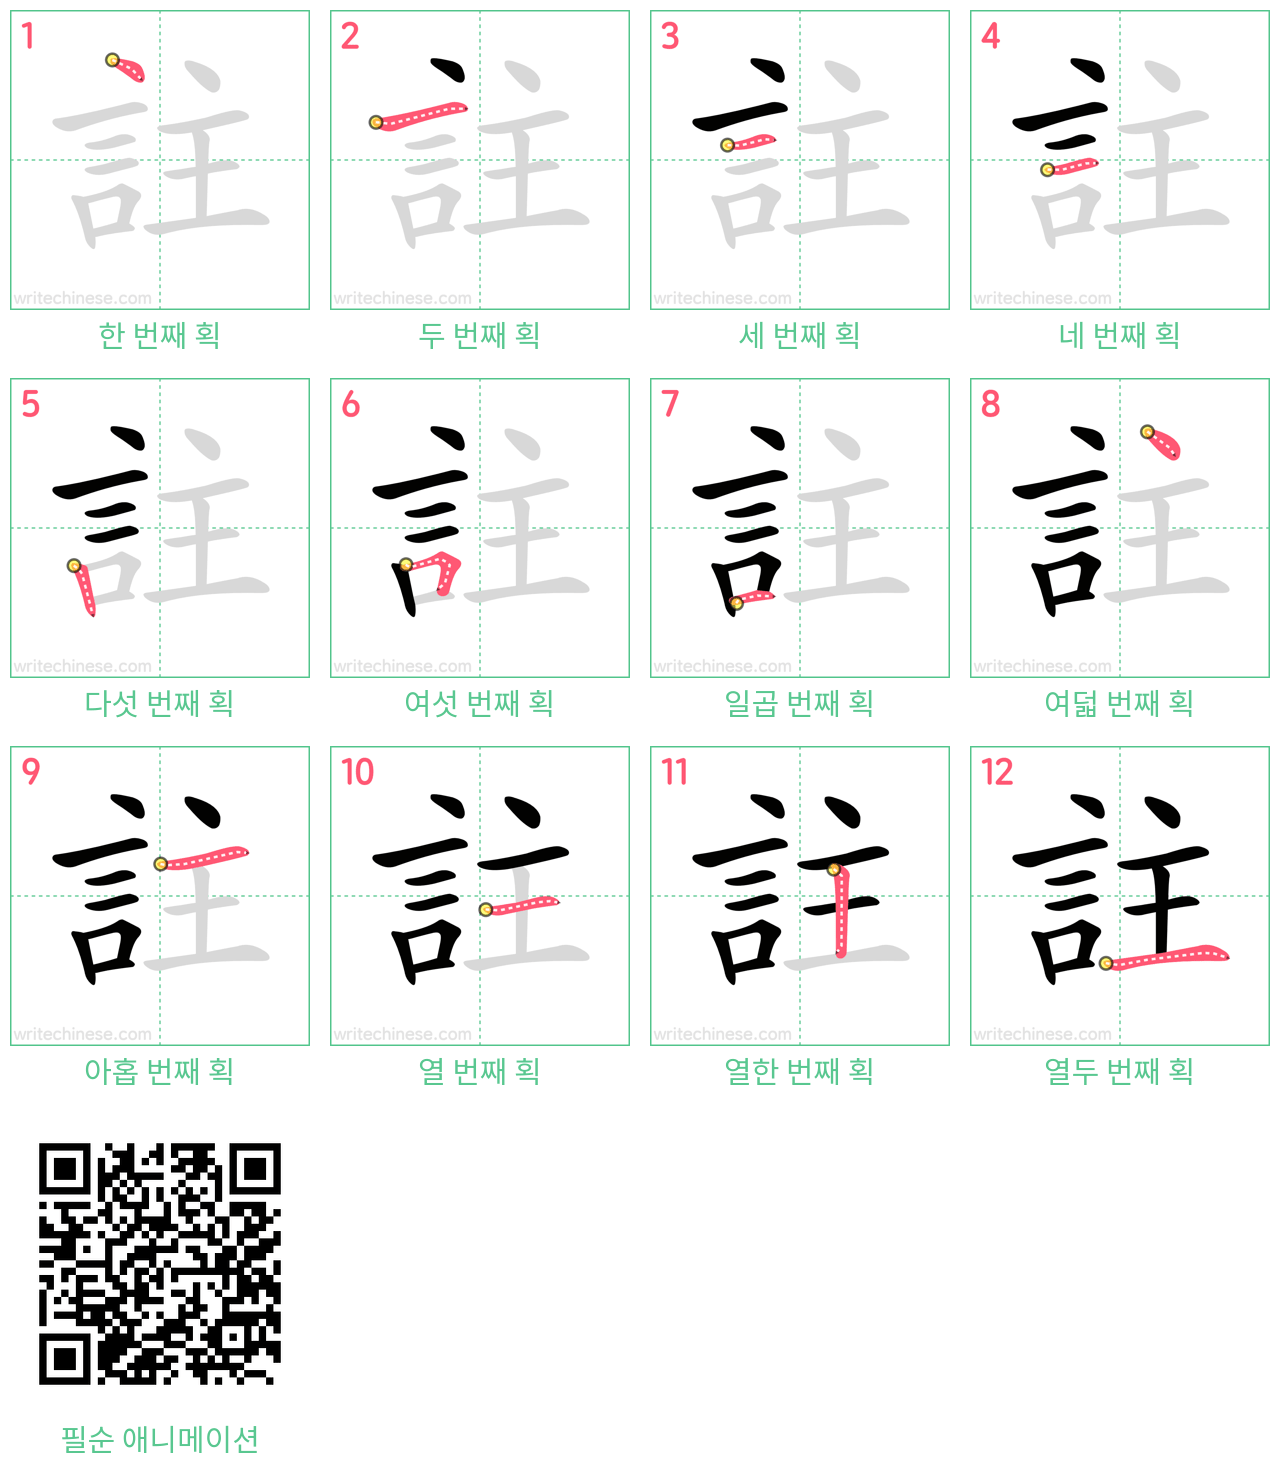 註 step-by-step stroke order diagrams